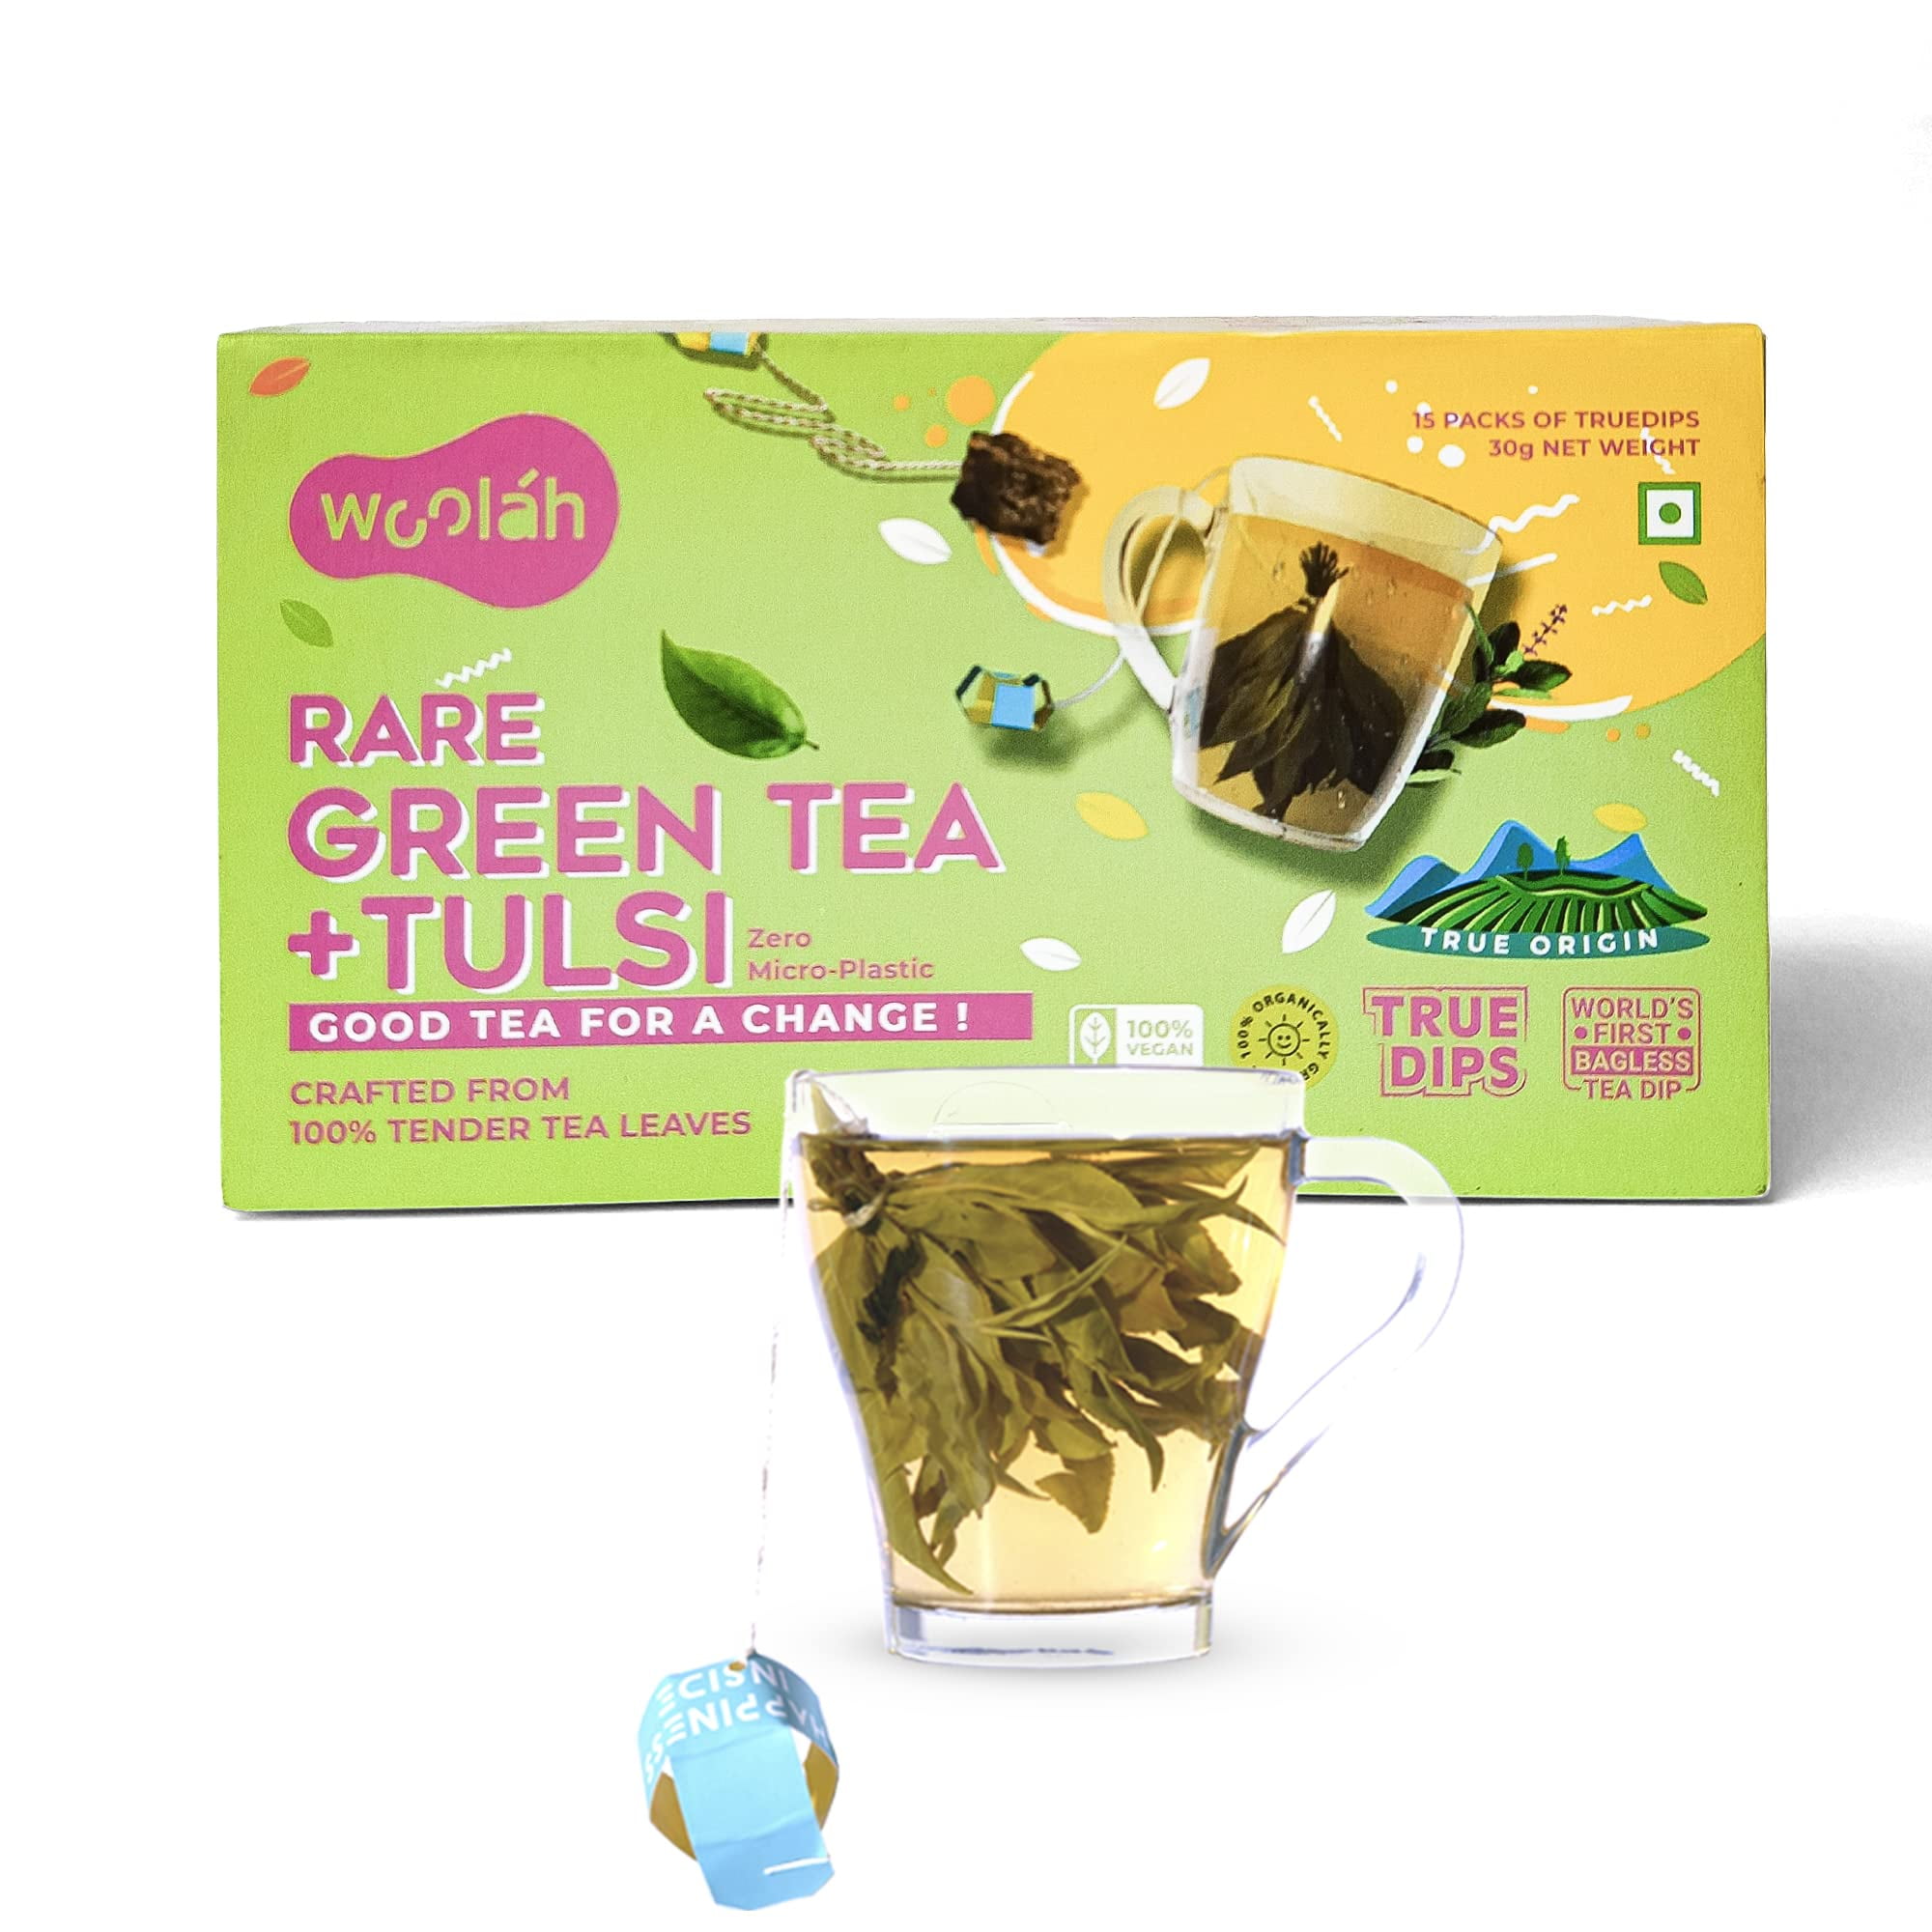 Yogi Sweet Tangerine Positive Energy Tea - 16 Tea Bags per Pack (6 Packs) -  Organic Tangerine Energy Tea - Includes Black Tea Leaf, Yerba Mate Leaf